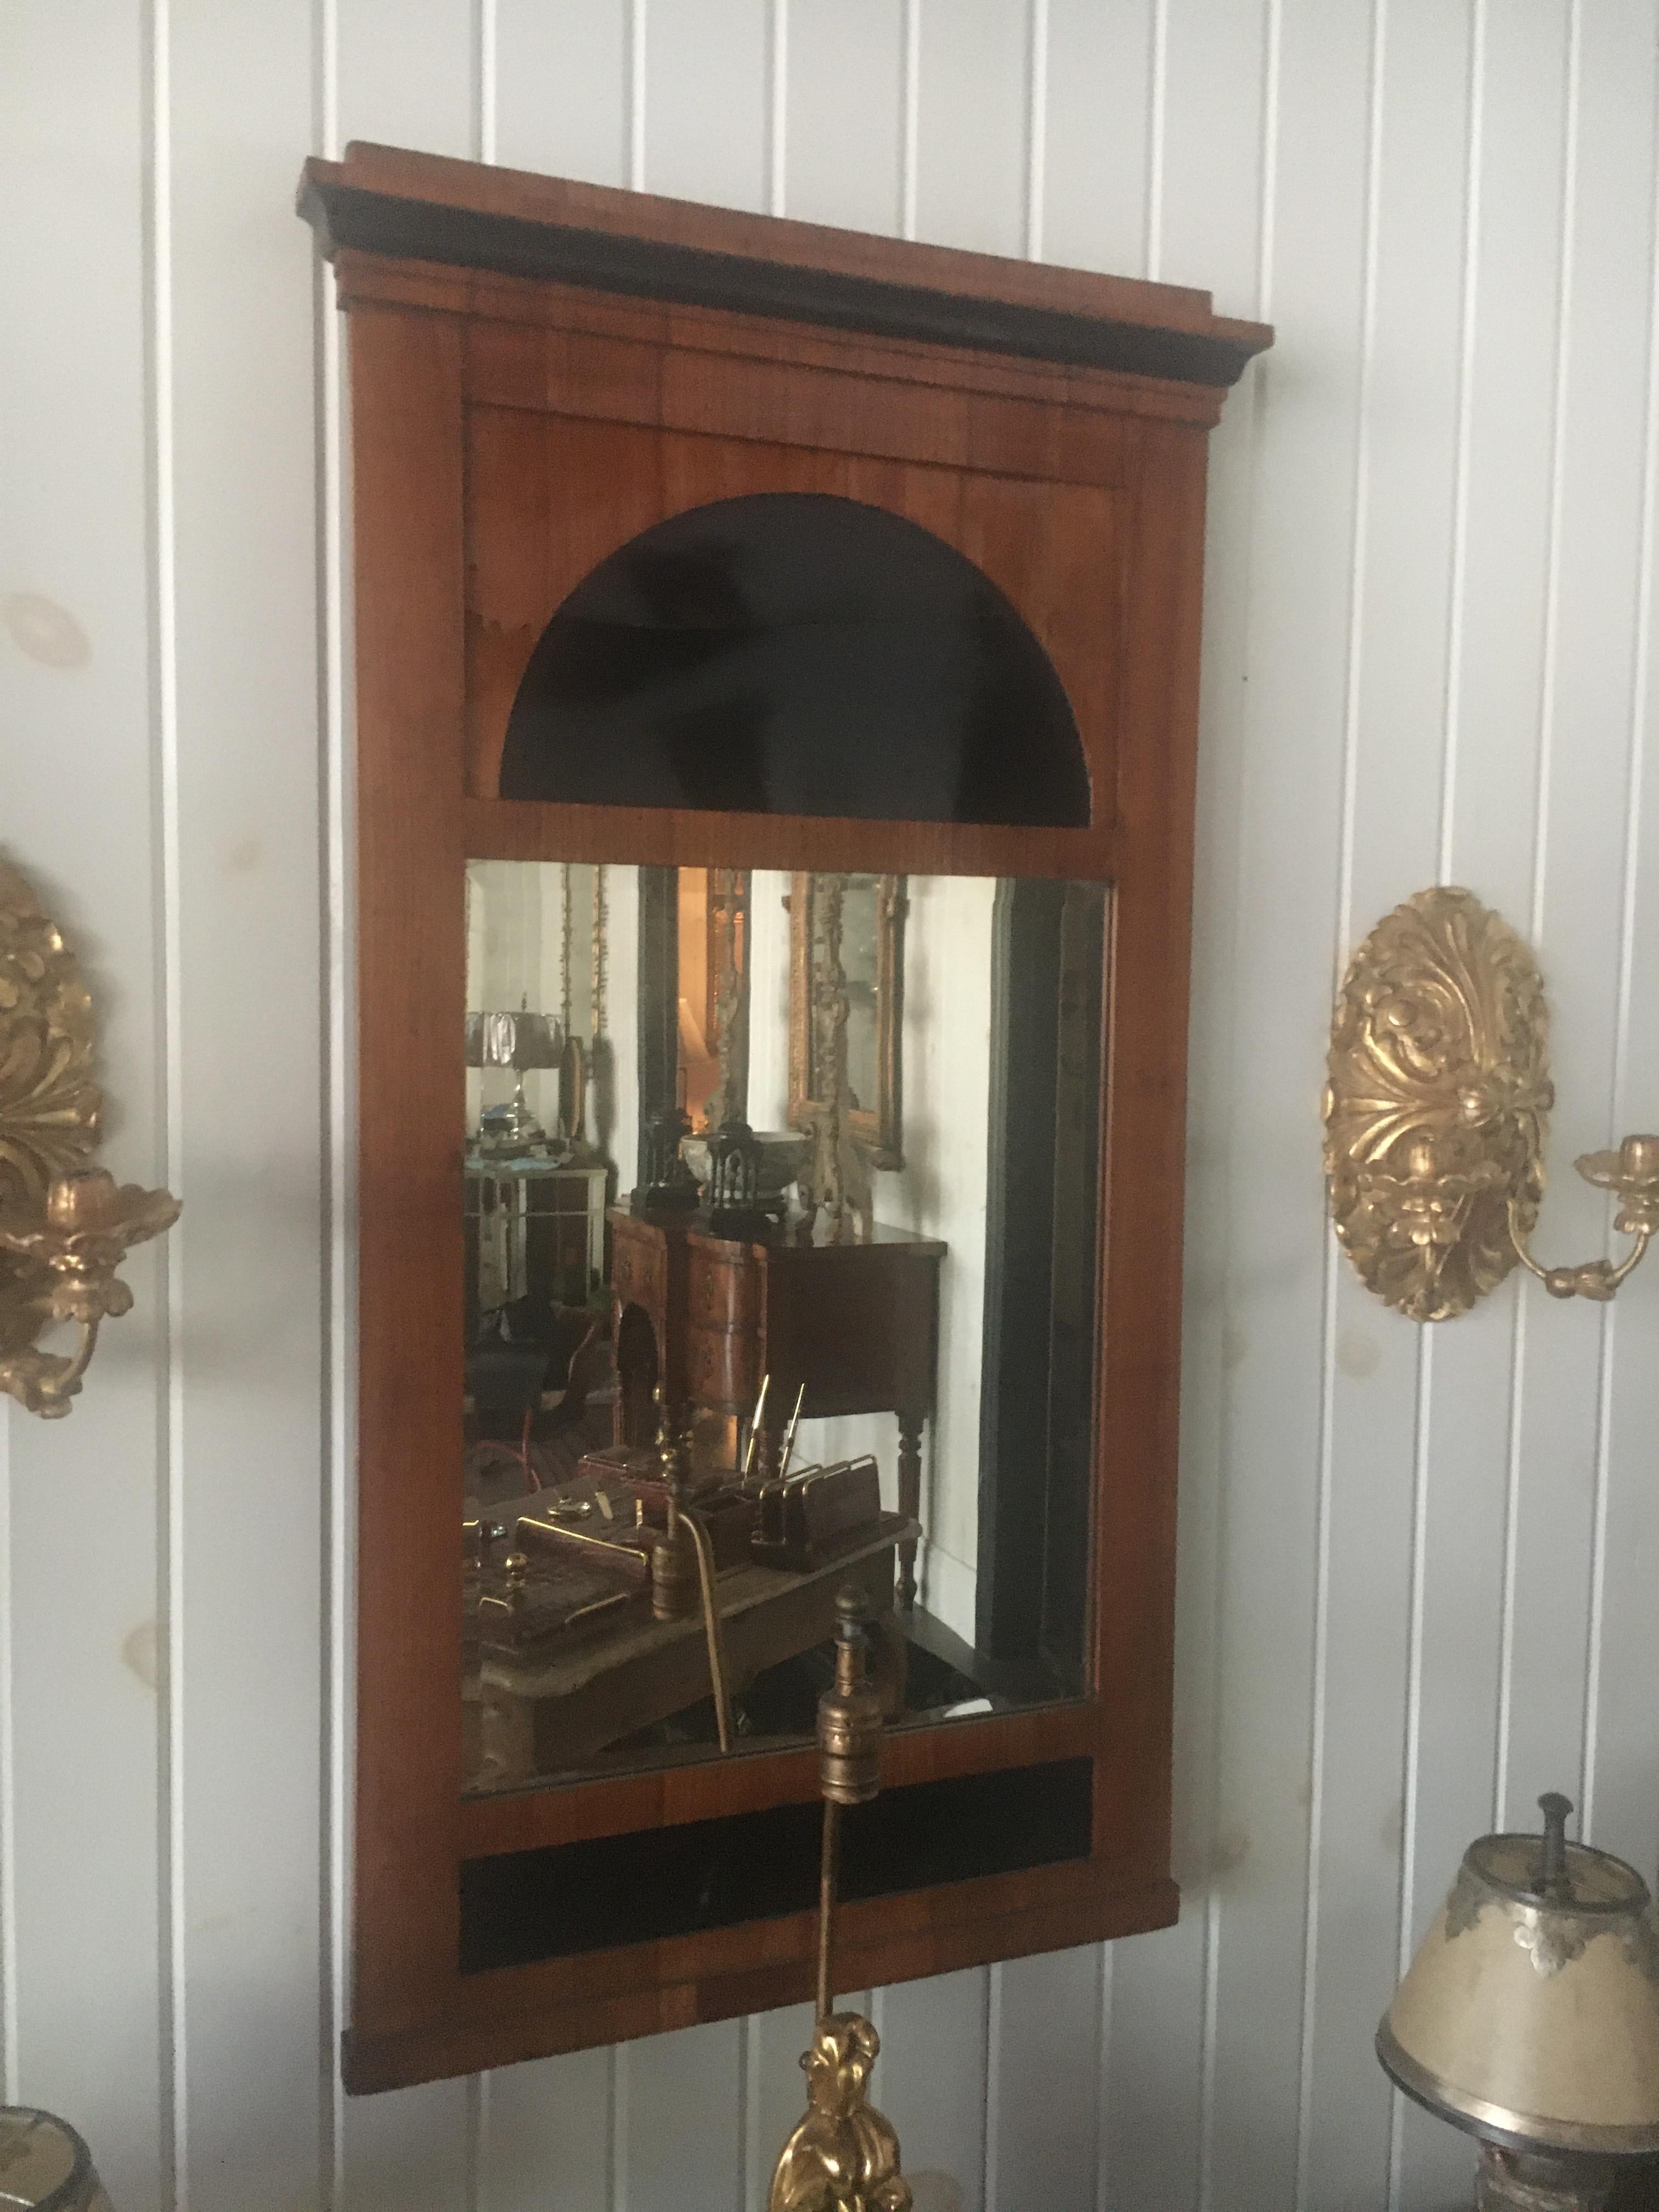 Biedermeier-Pfeilerspiegel aus Obstholz 
19. Jahrhundert 
mit einem profilierten, vorspringenden Gesims über einem geschnitzten Paneel, das eine Demilune und eine vertikale, rechteckige, abgeschrägte Spiegelplatte zeigt. 
Maße: Höhe 41 x Breite